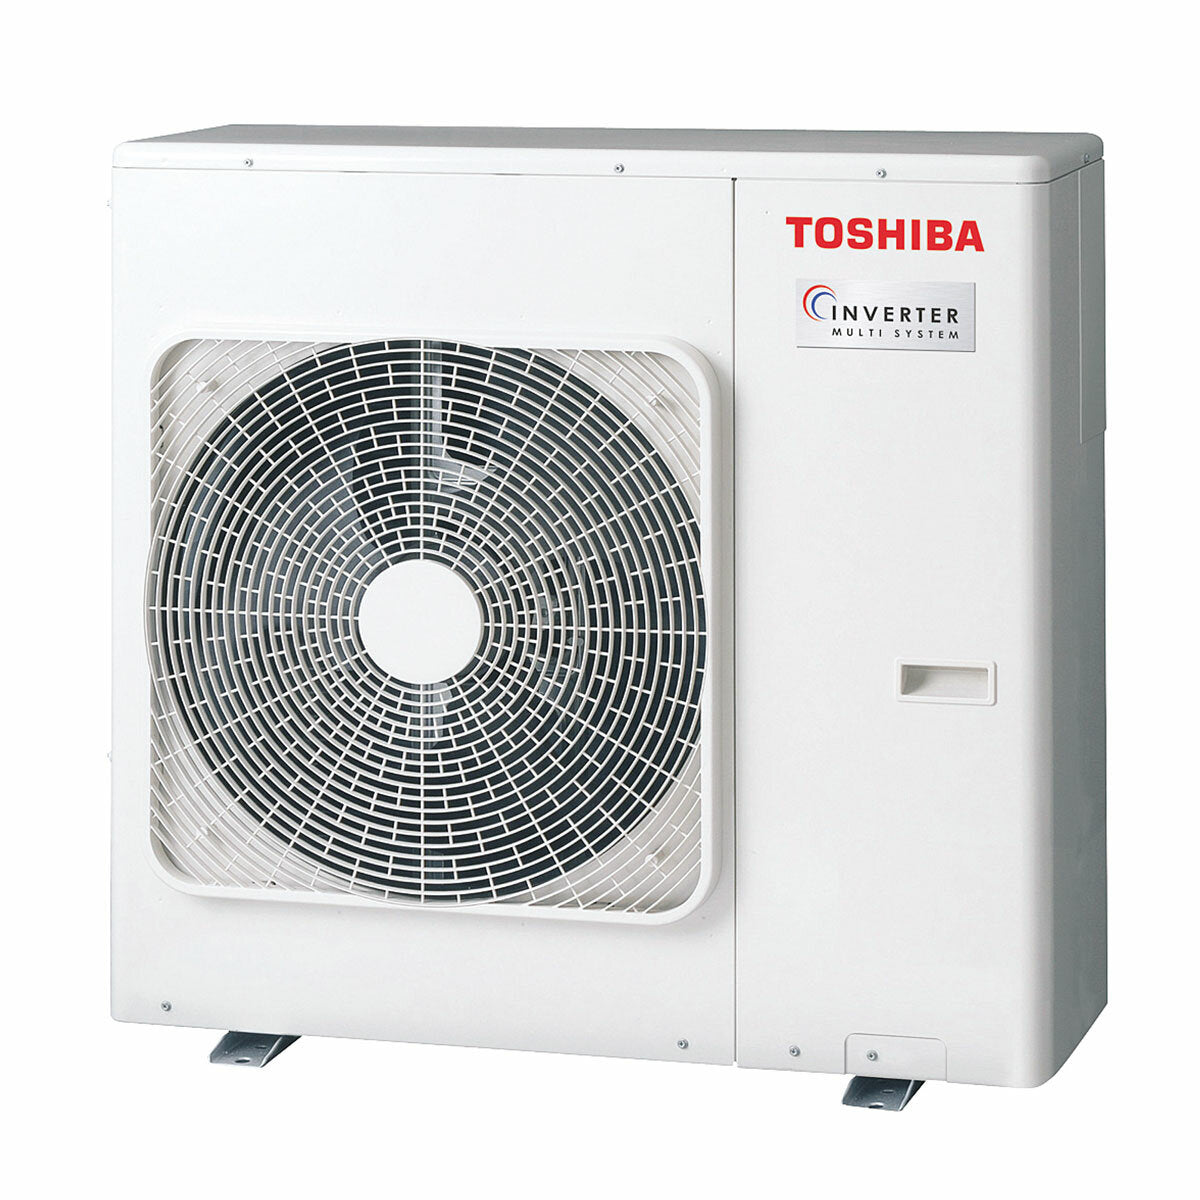 Toshiba Console J2 climatiseur panneaux divisés 9000+9000+12000+12000 BTU inverseur A++ unité extérieure 8 kW 